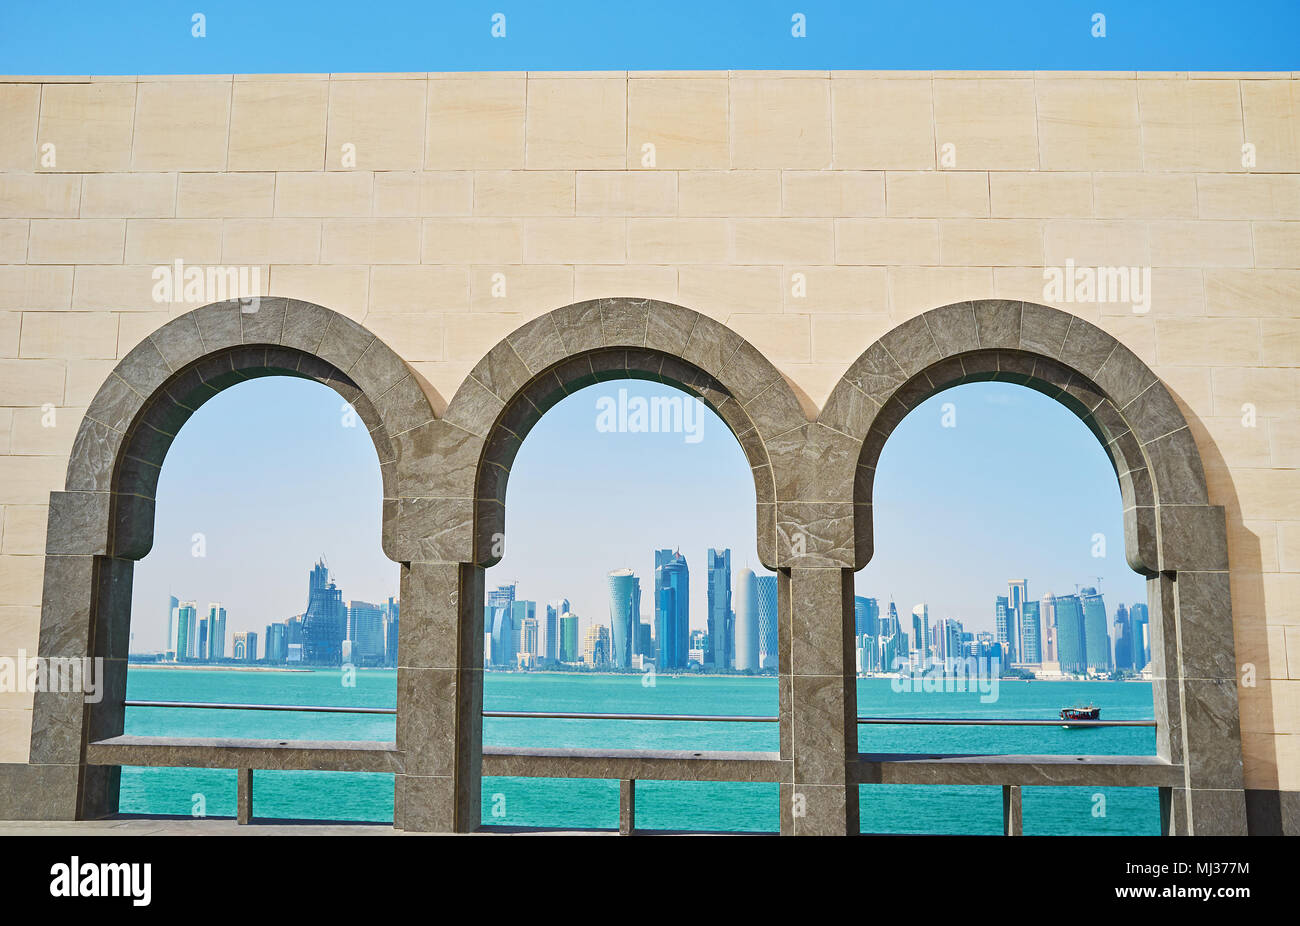 Il pittoresco paesaggio marino con grattacieli futuristici di Al Dafna distretto attraverso la pietra finestre ad arco, Doha, Qatar. Foto Stock